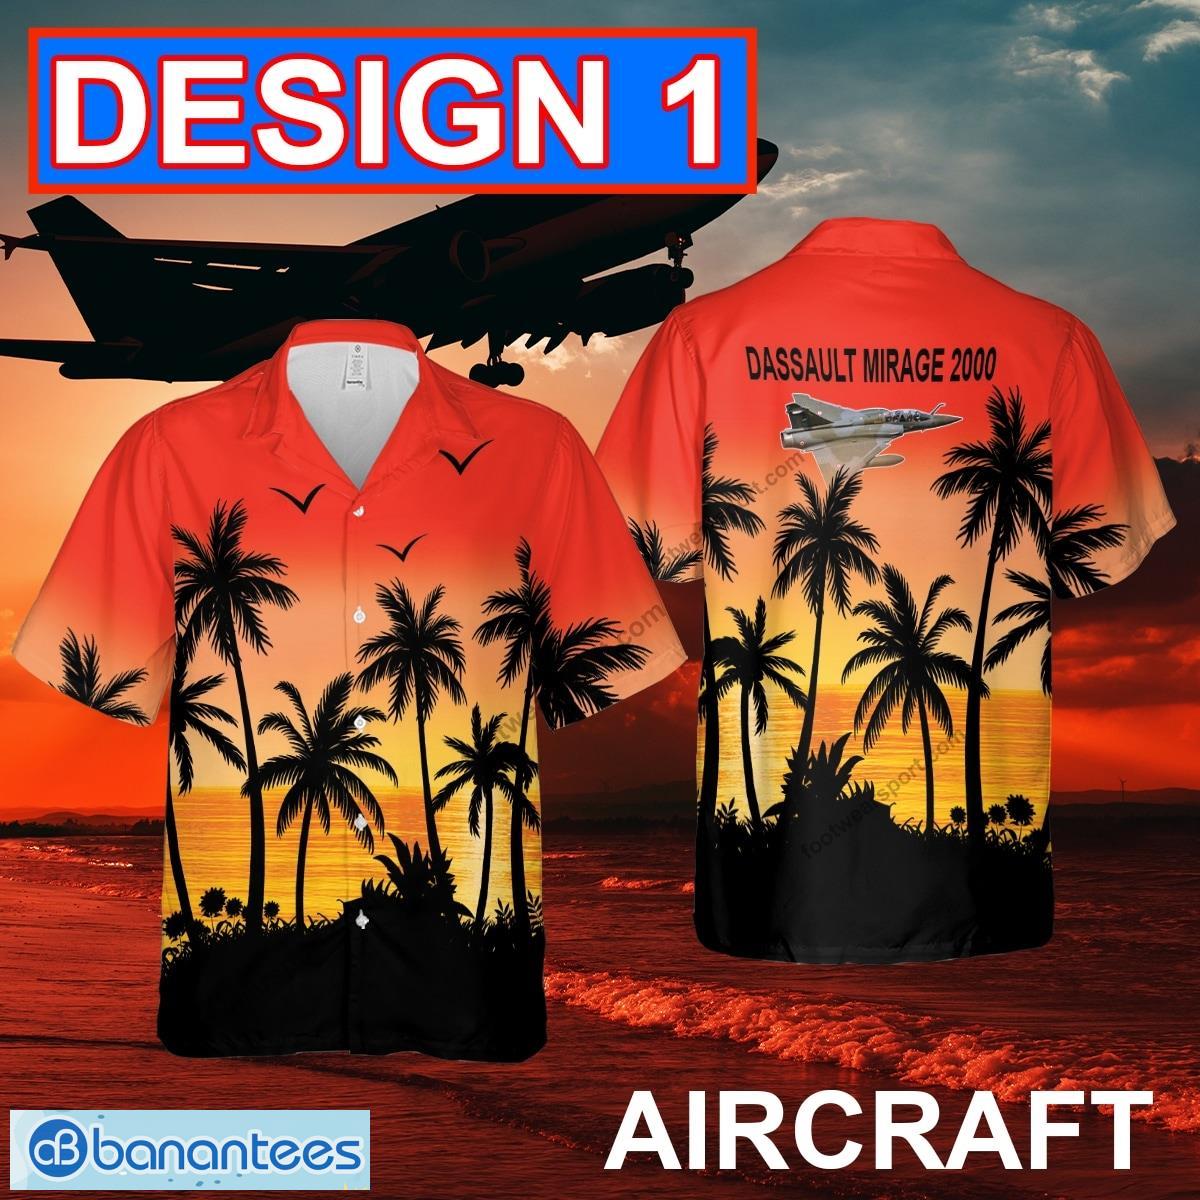 Dassault Mirage 2000 Aircraft Hawaiian Shirt Red Color AOP Gift Summer - Dassault Mirage 2000 Aircraft Hawaiian Shirt Multi Design 1